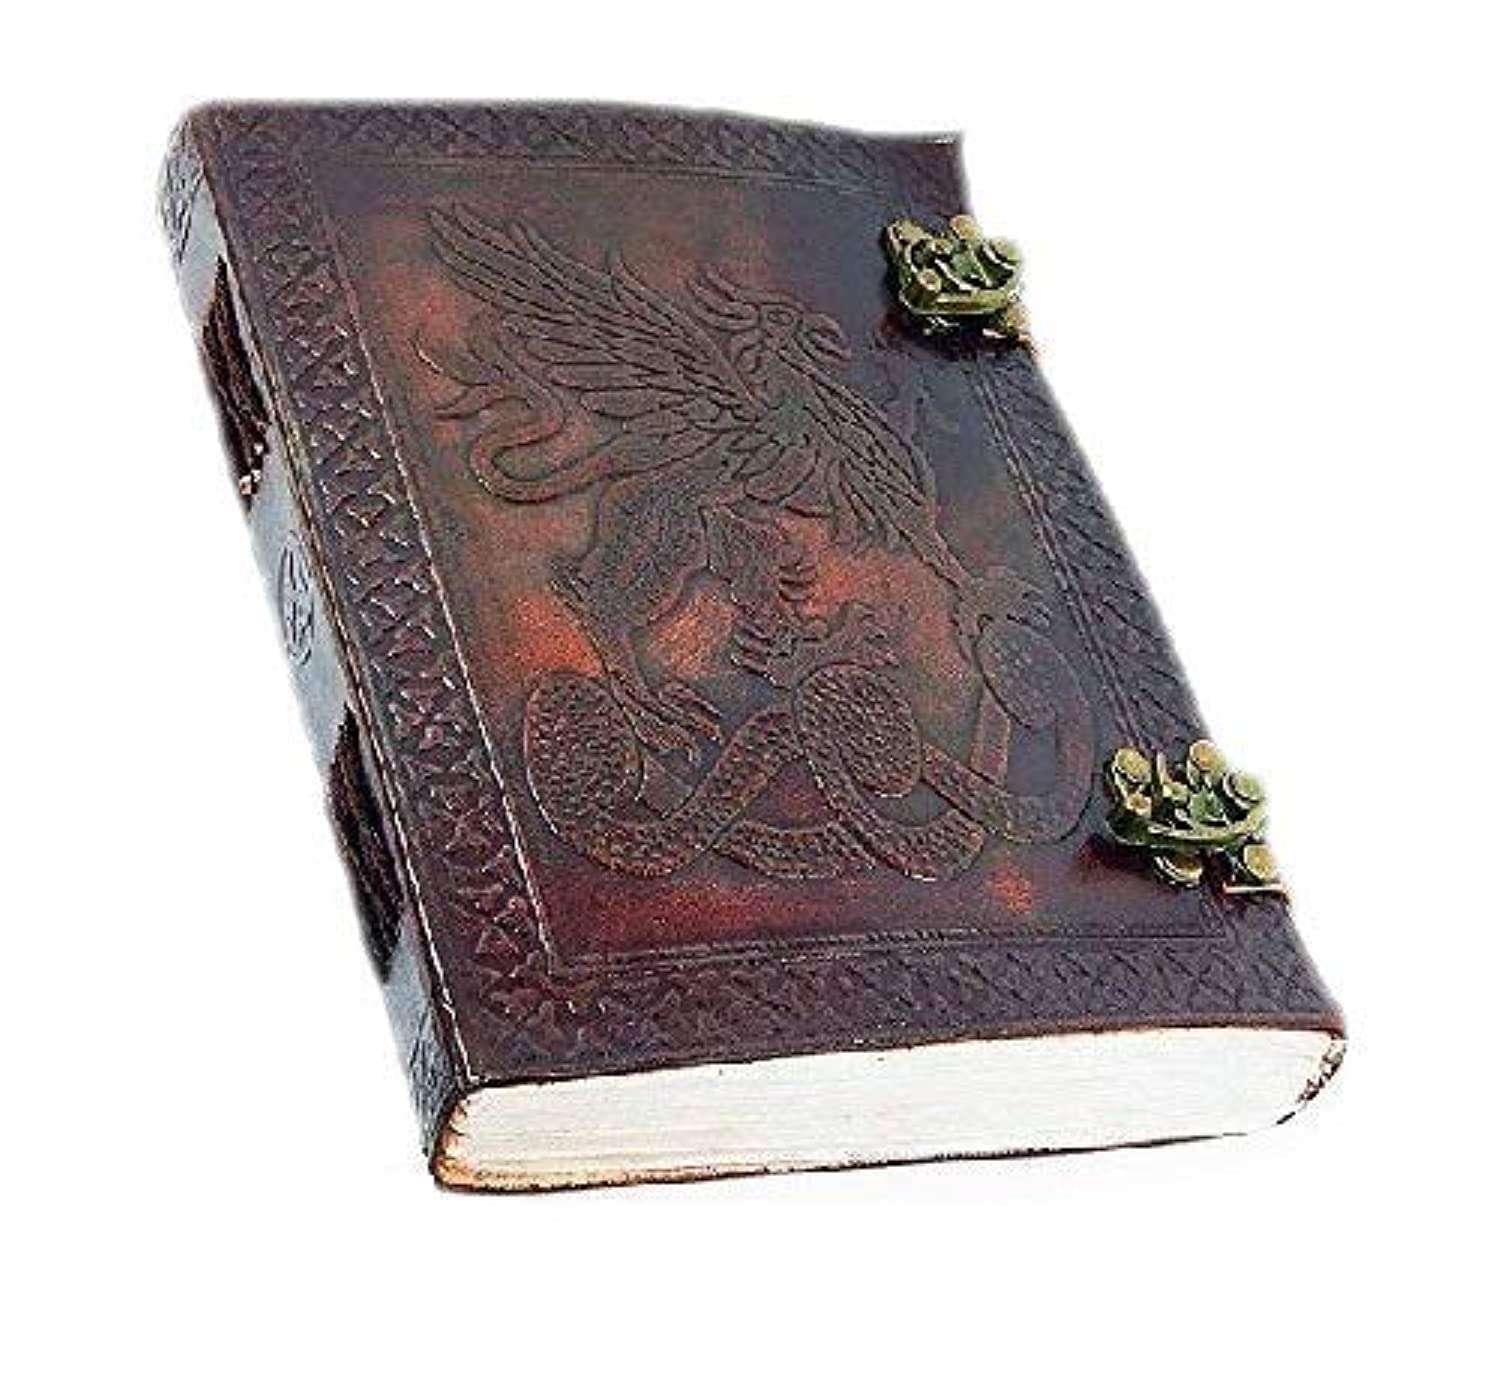 OVERDOSE Handgemachtes Leder Tagebuch Celtic Griffin Journal Dragon Diary mit Dual C-Lock Reisetagebuch Schreib Journal Organizer Planer notizbuch a5 Größe 6x8 Zoll | 15x20cm